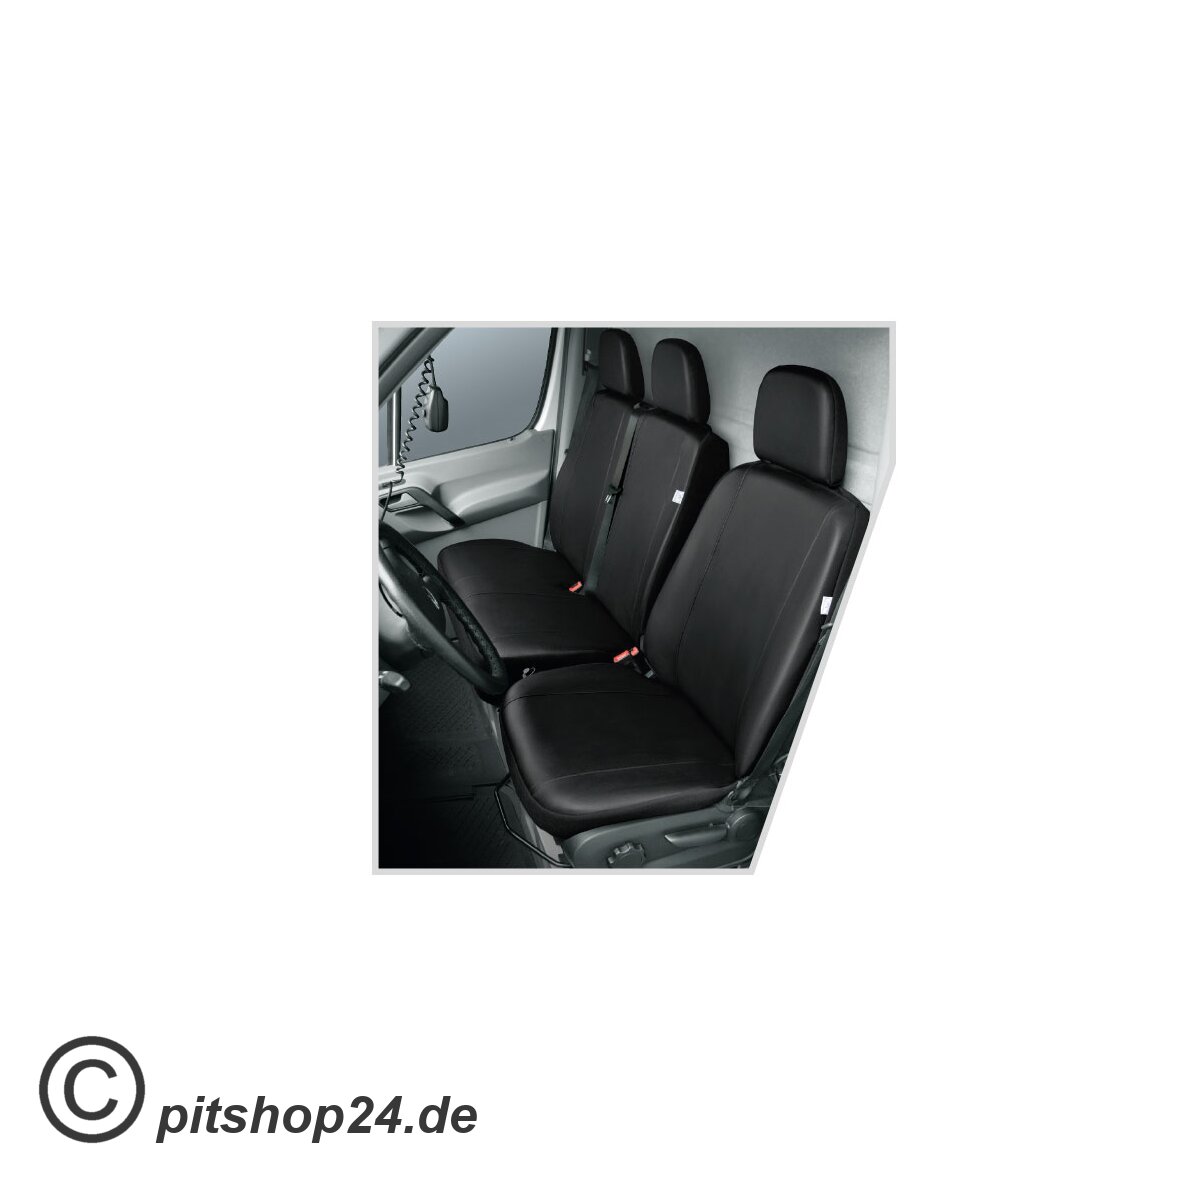 Nissan Primastar 1 Kunstleder Sitzbezüge Sitzschoner Set, 59,90 €